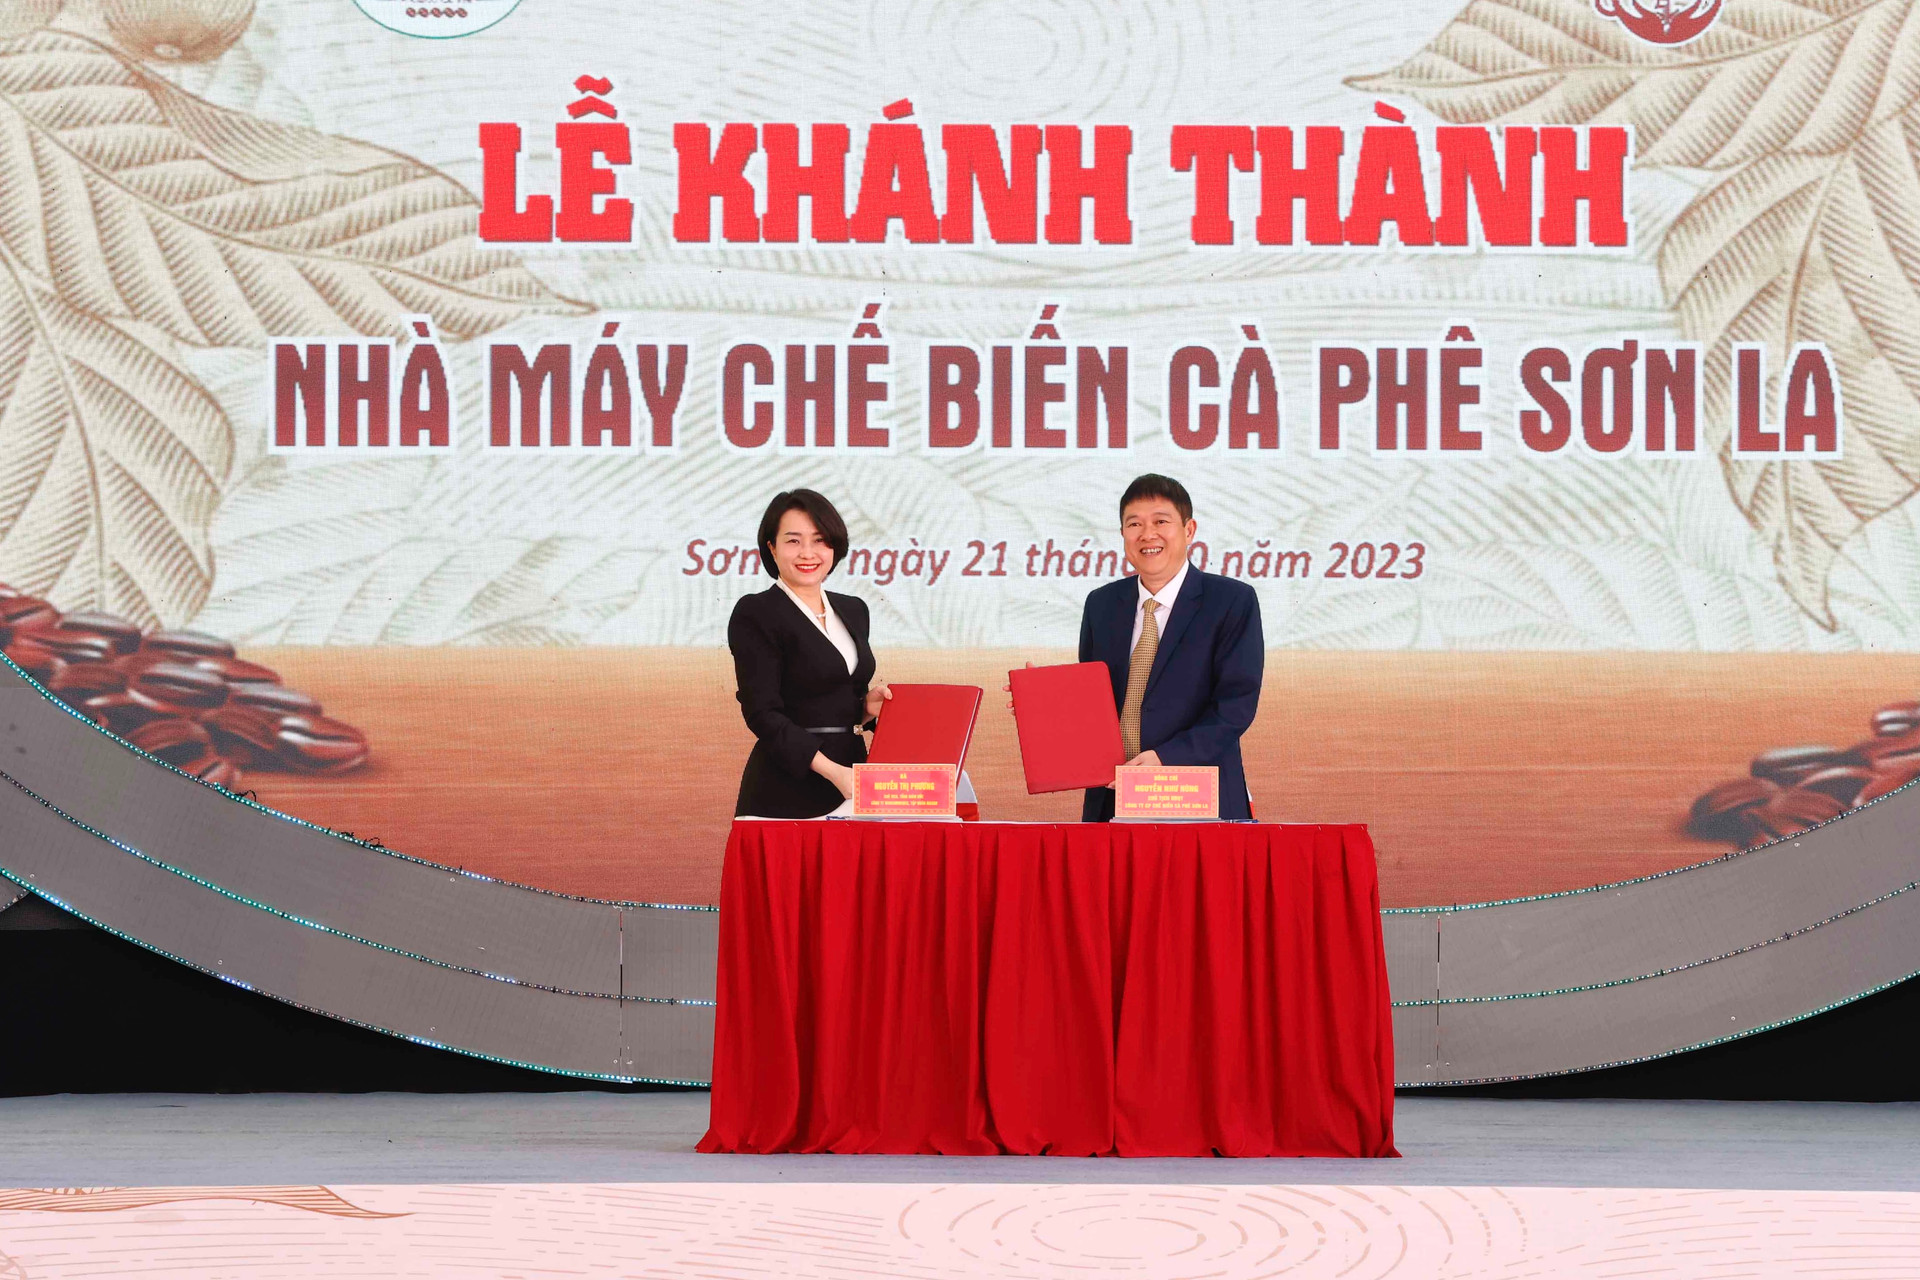 Bà Nguyễn Thị Phương, Tổng Giám đốc WinCommerce cùng ông Nguyễn Như Hùng, Chủ tịch HĐQT Công ty CP Chế biến Cà phê Sơn La.